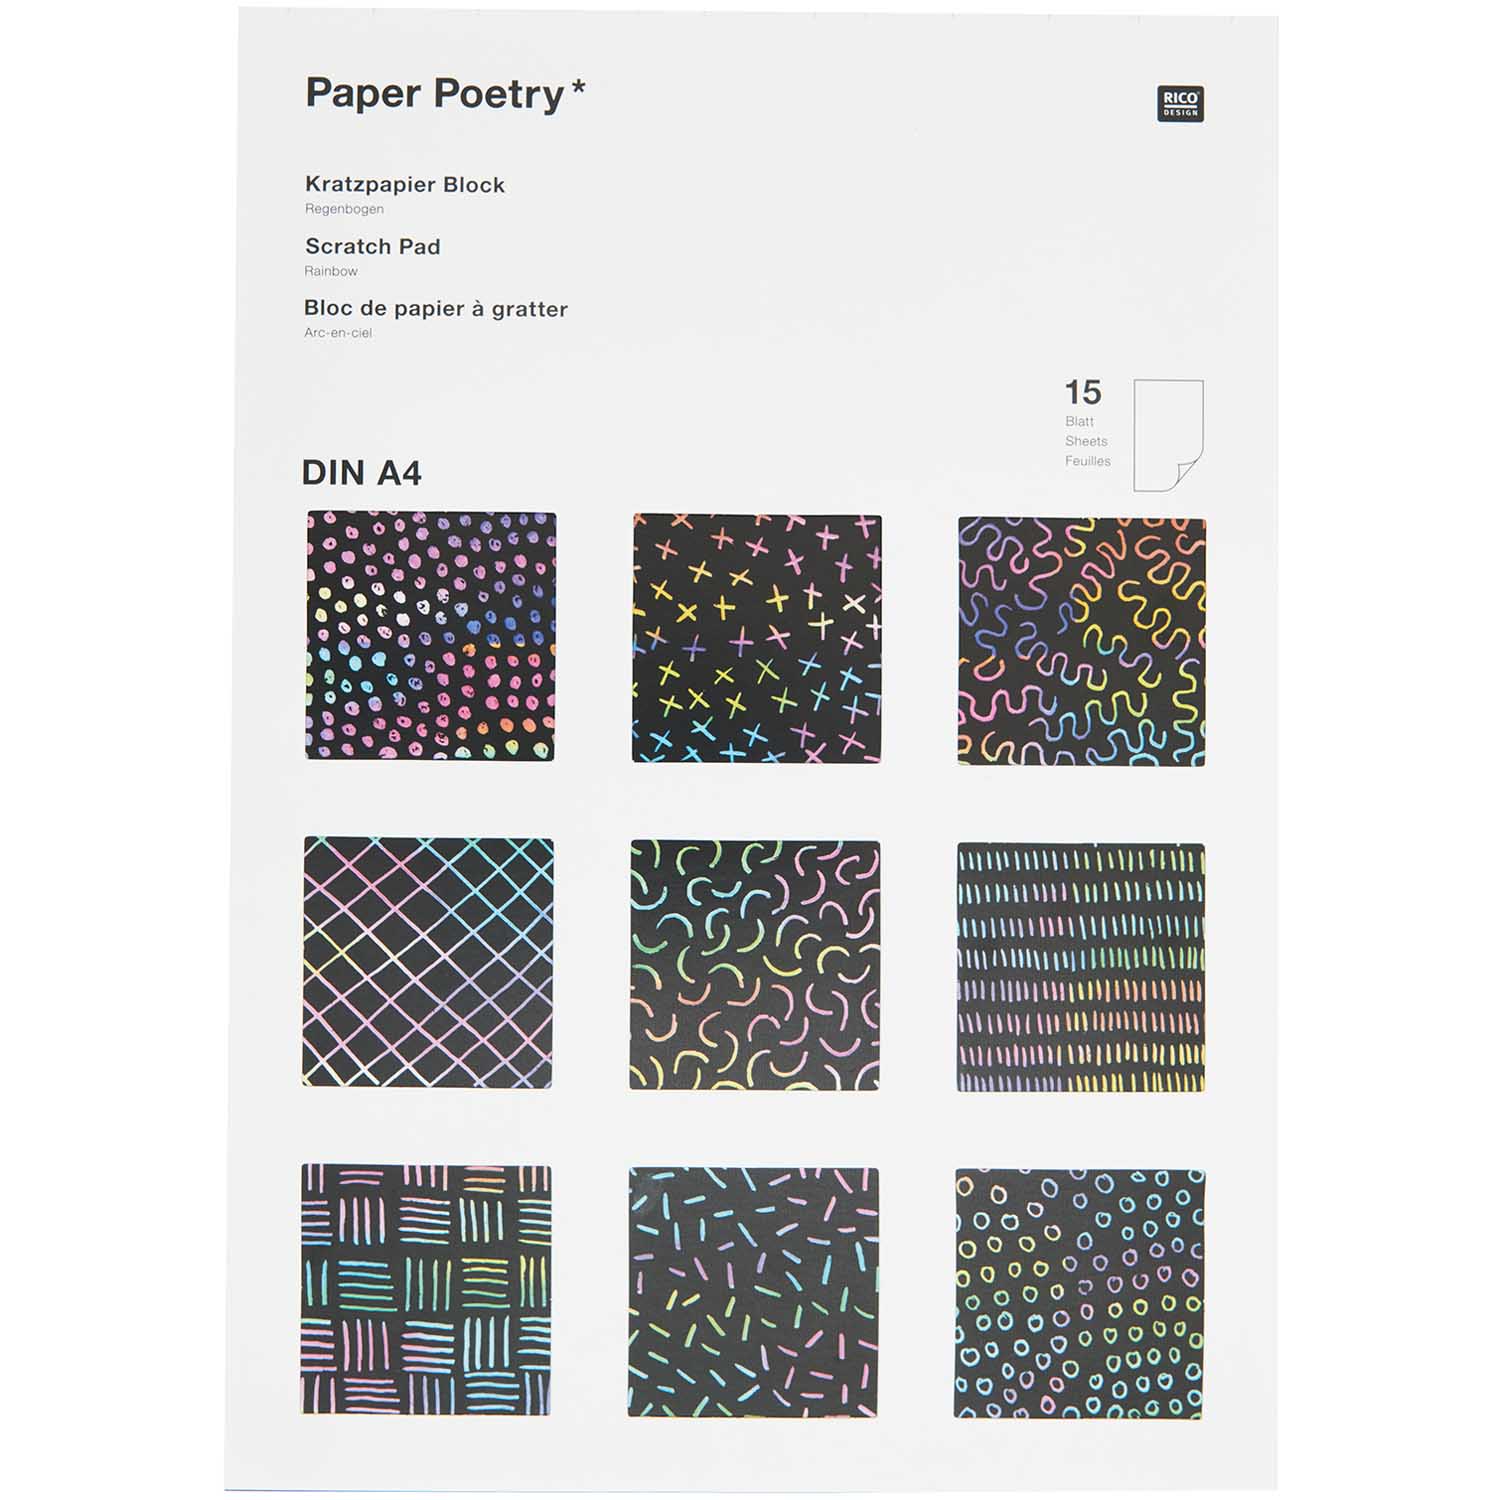 Paper Poetry Kratzpapier Block Regenbogen A4 15 Blatt